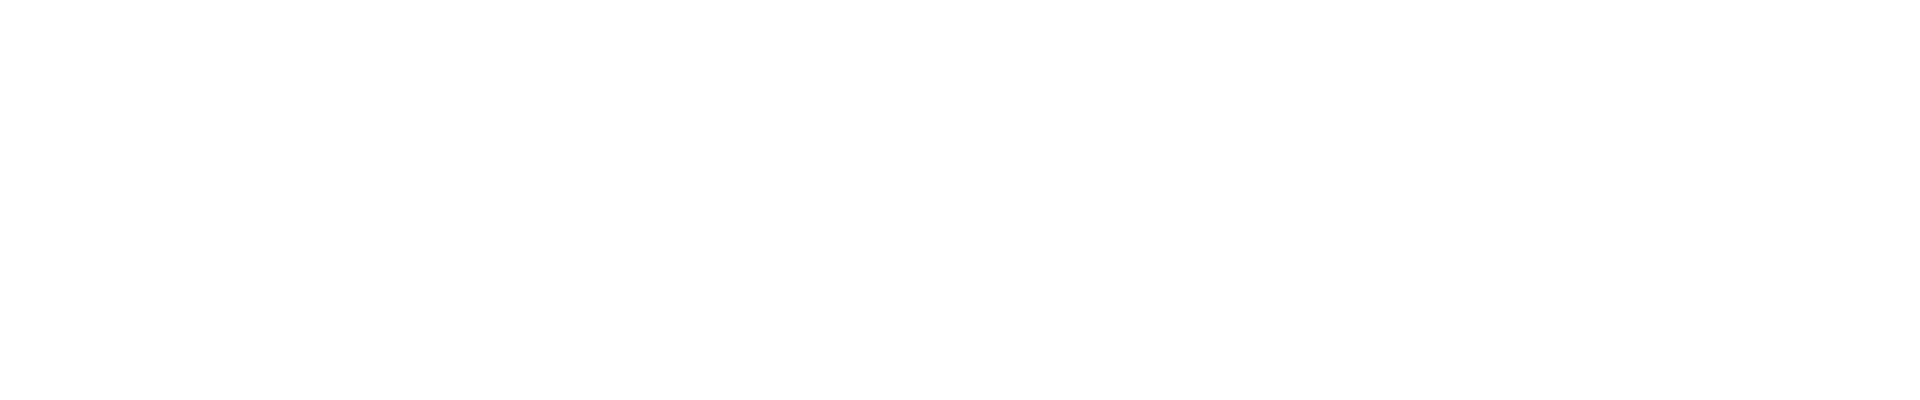 Plan de Reecuperacion, Transformacion y Resiliencia